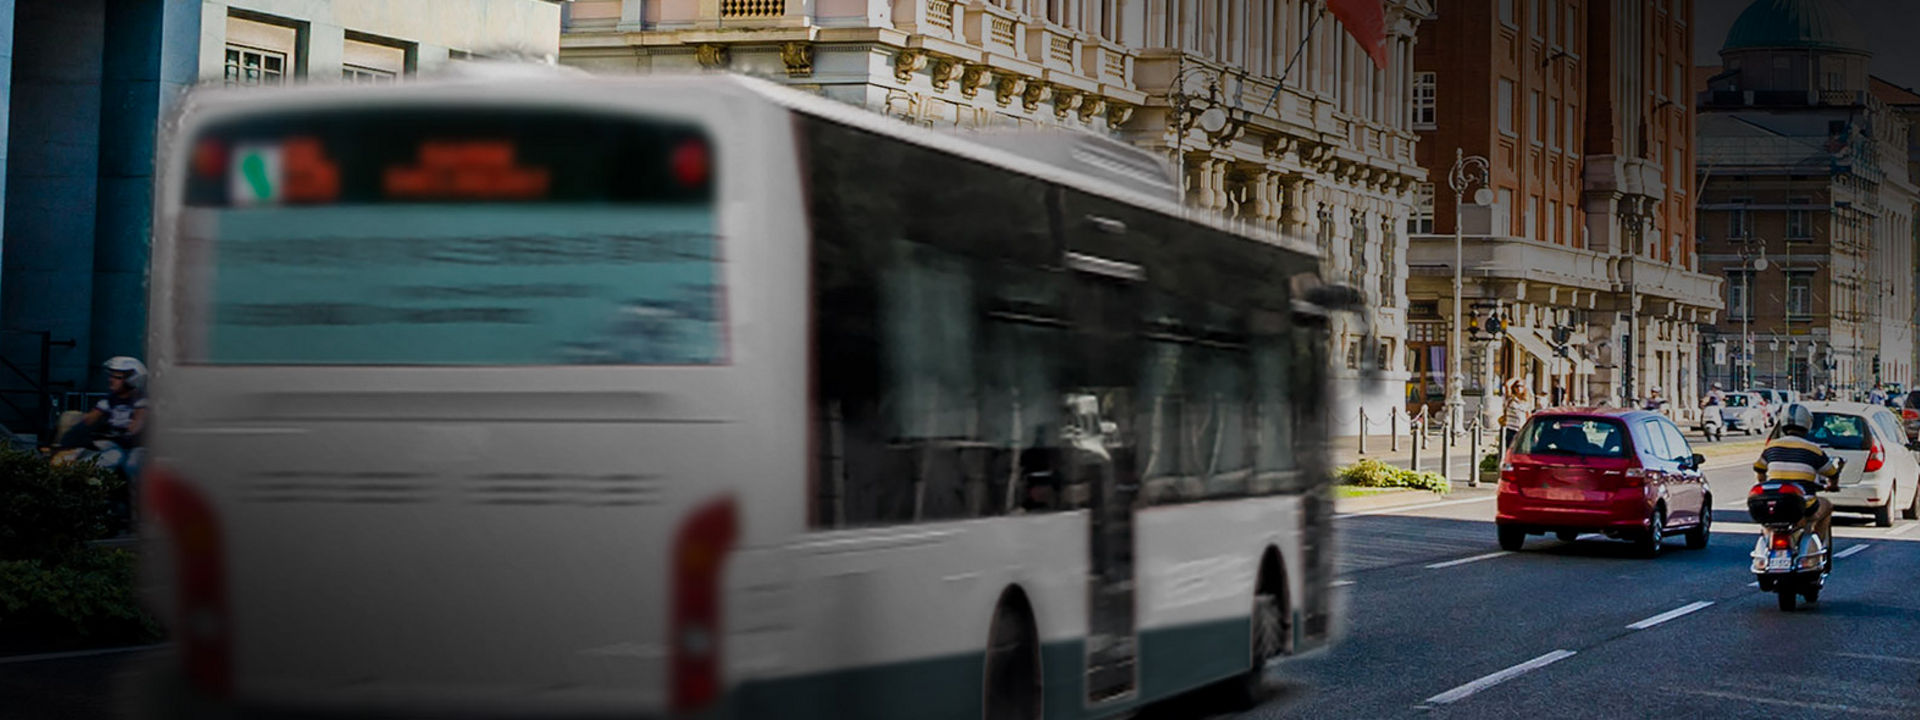 Dieses Bild zeigt die Rückseite eines Stadtbusses mit Bridgestone Stadtbusreifen, der im Stadtzentrum fährt.